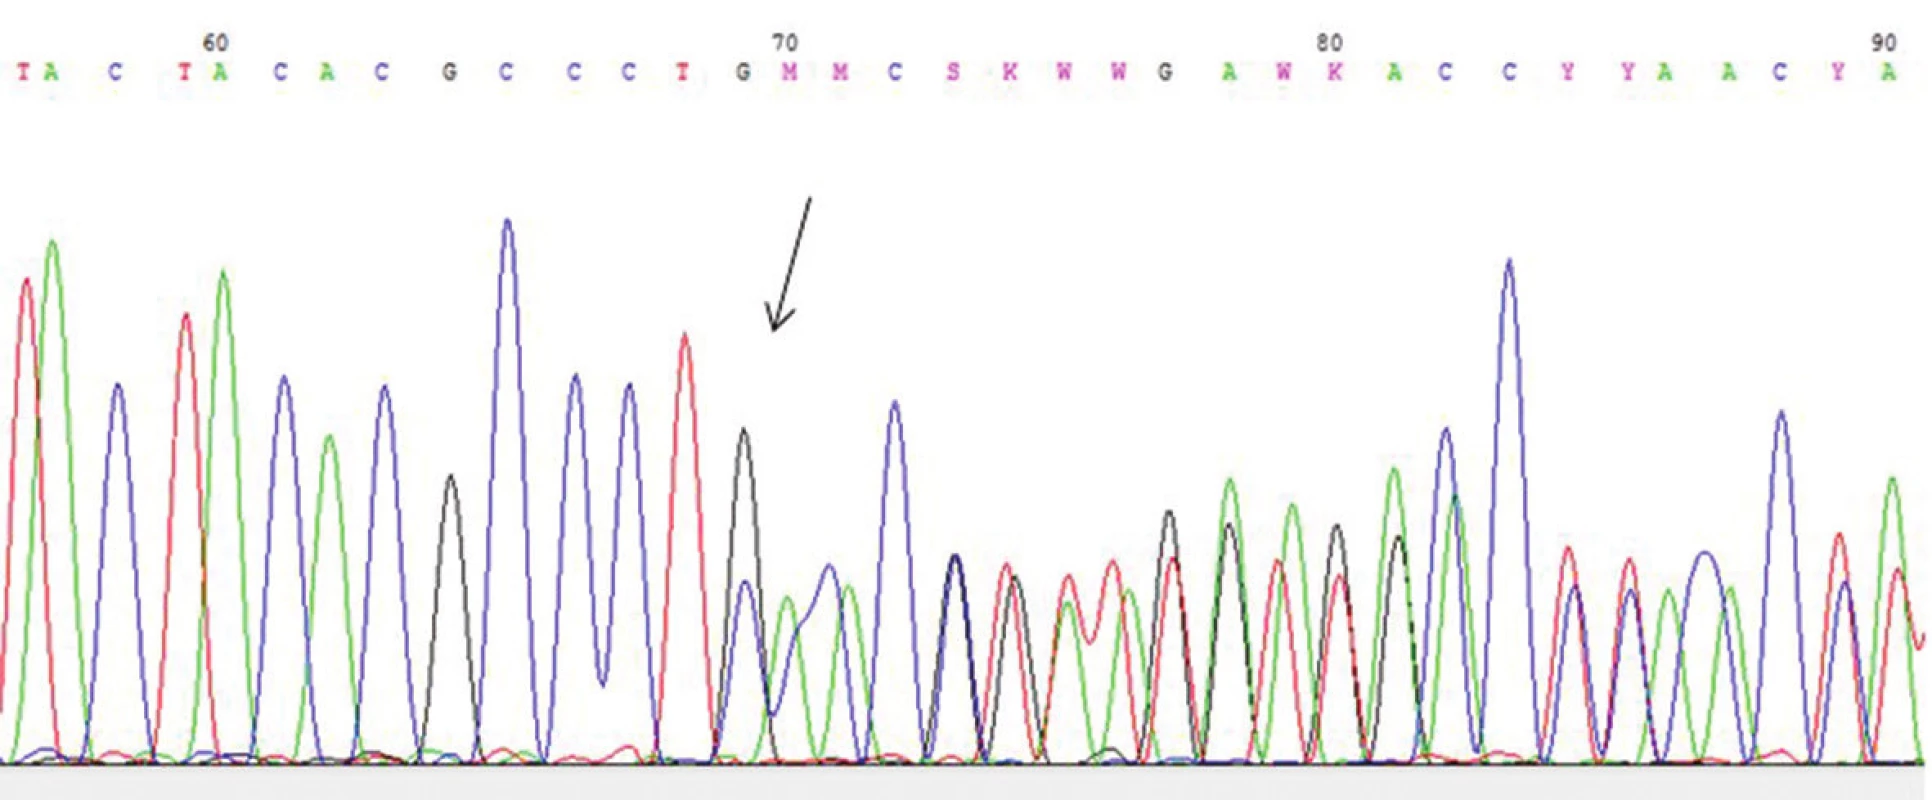 Gen COL5A1: mutace c. 1048insG v 7. exonu předčasný terminační kodon